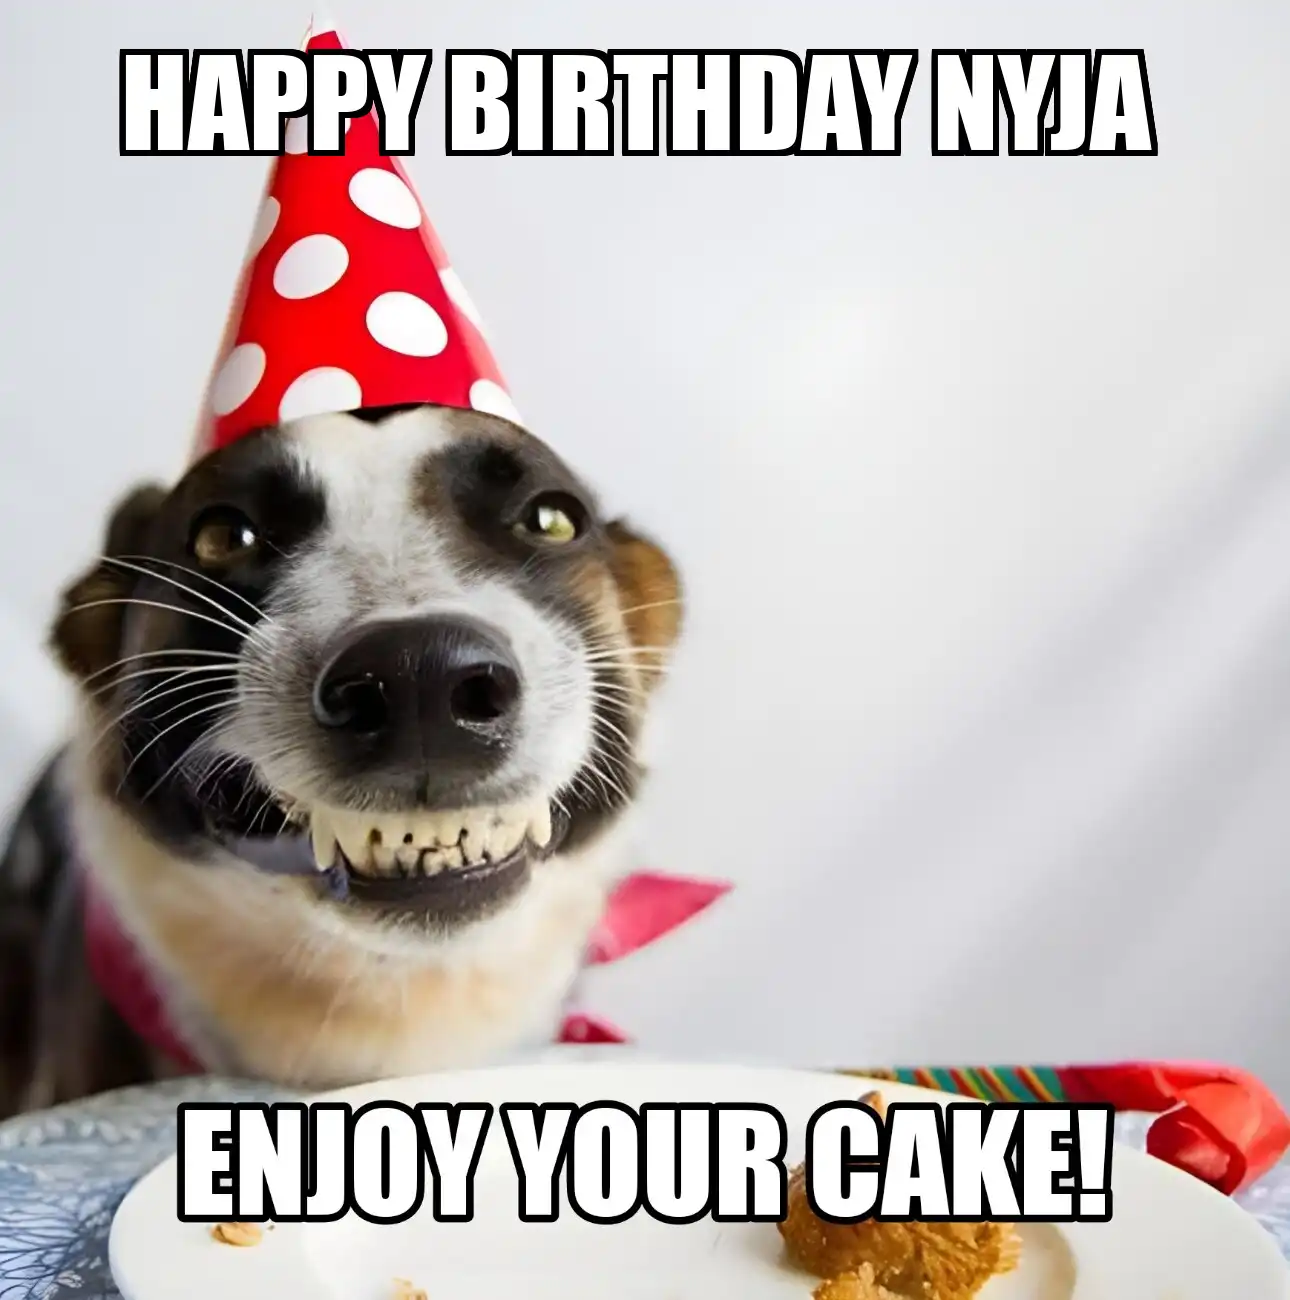 Happy Birthday Nyja Enjoy Your Cake Dog Meme